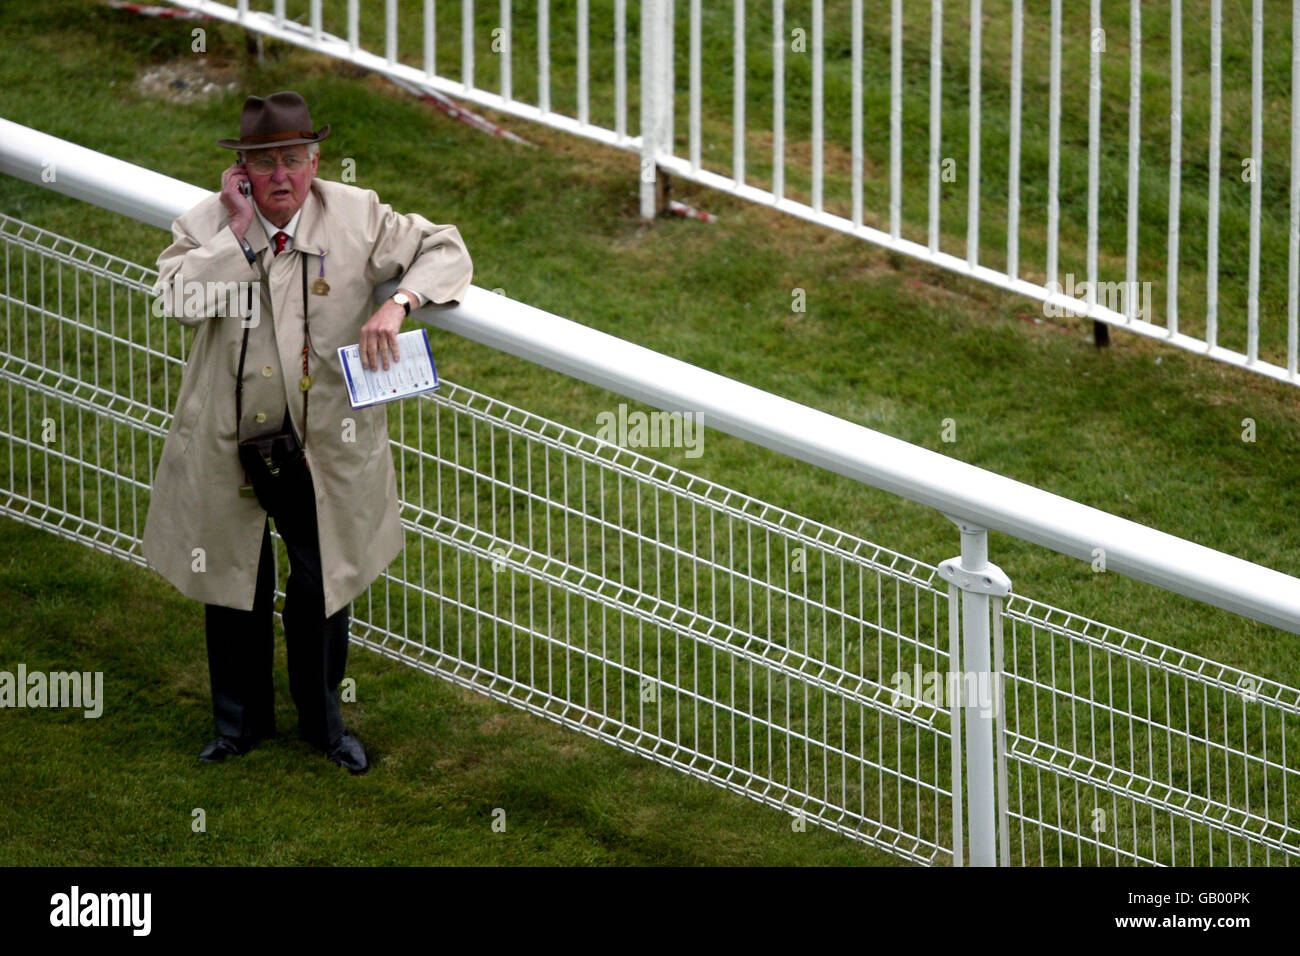 Pferderennen - Epsom - Oaks Day Meeting. Ein Rennfahrer wird über sein Mobiltelefon einen Tipp erhalten Stockfoto